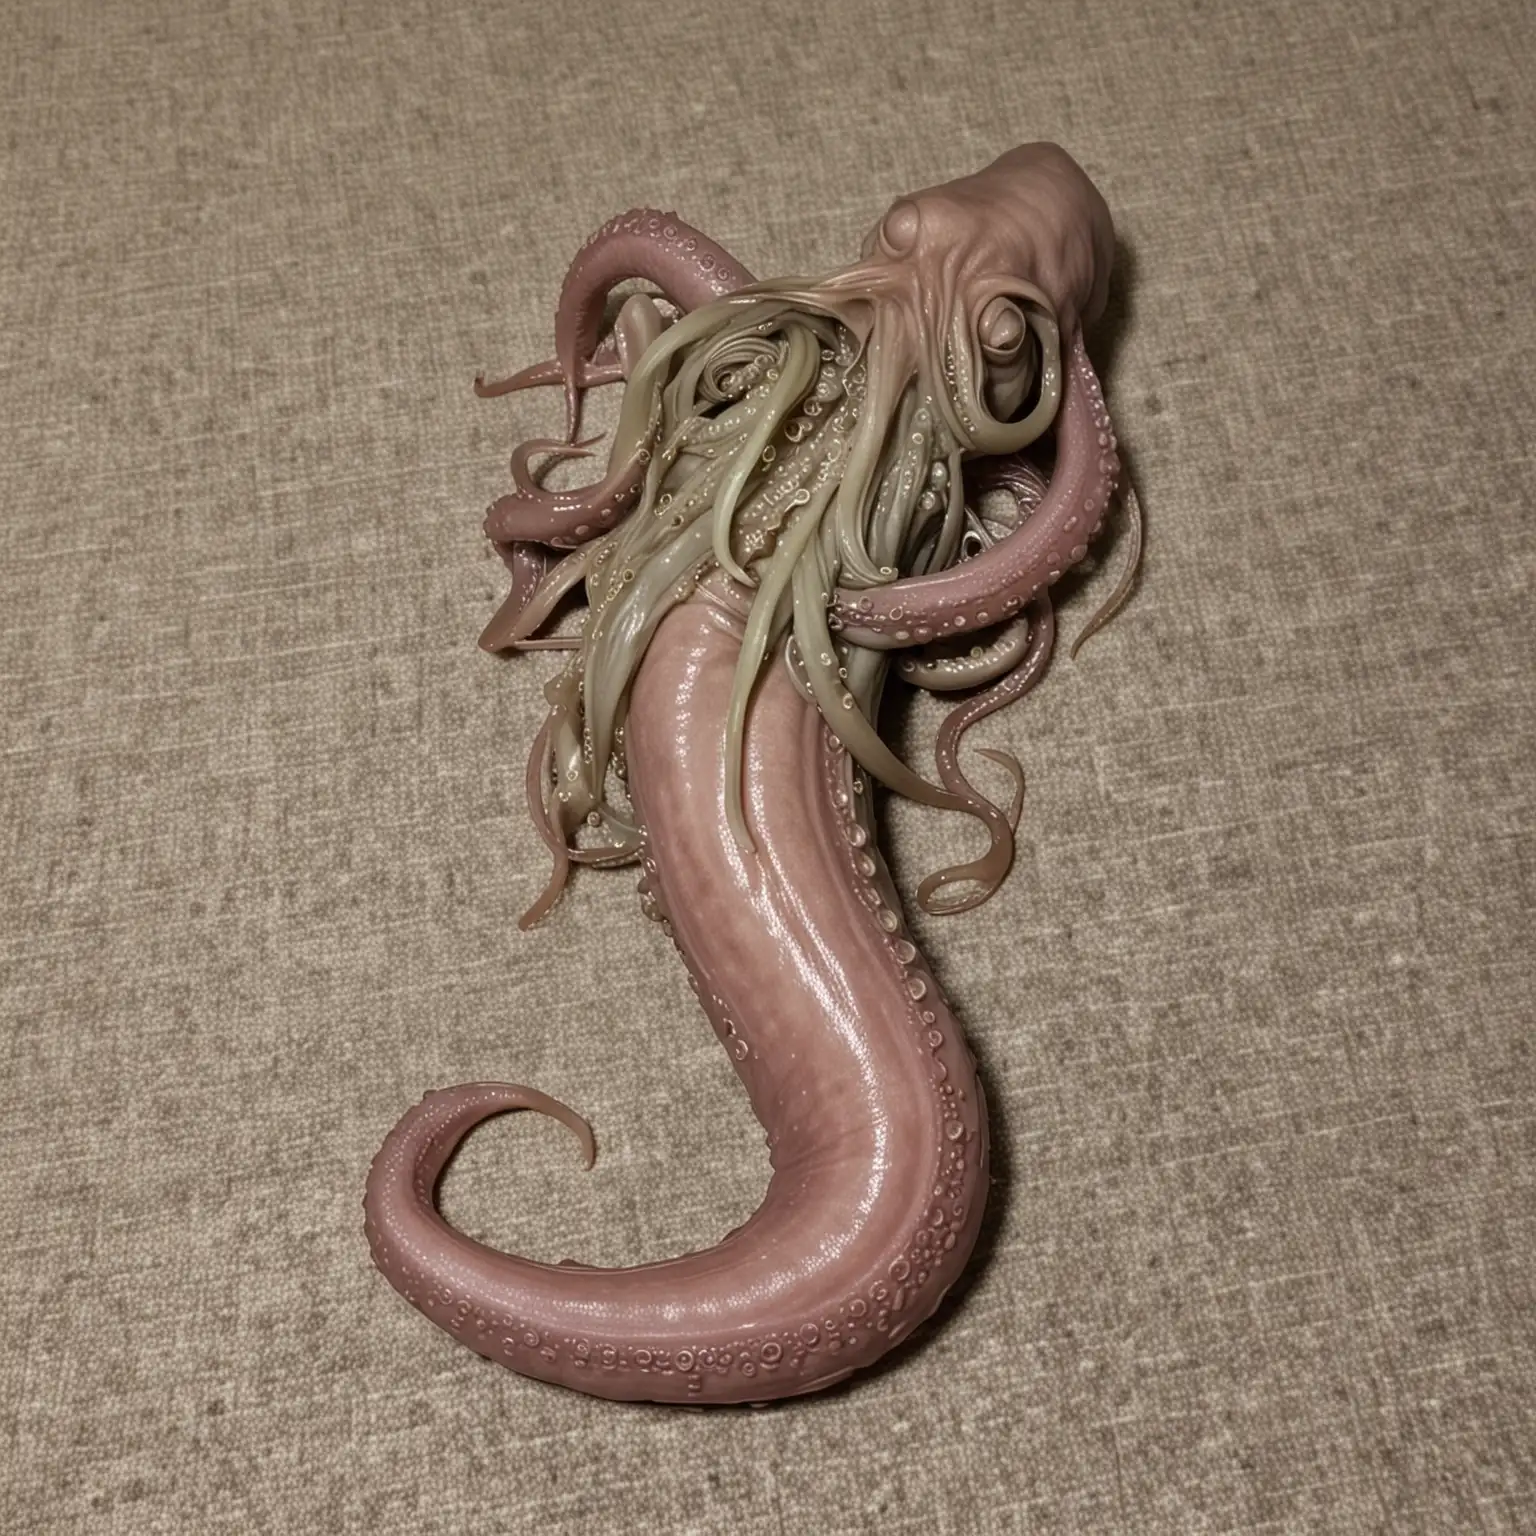 Sleepy Alien Penis with Folded Tentacles